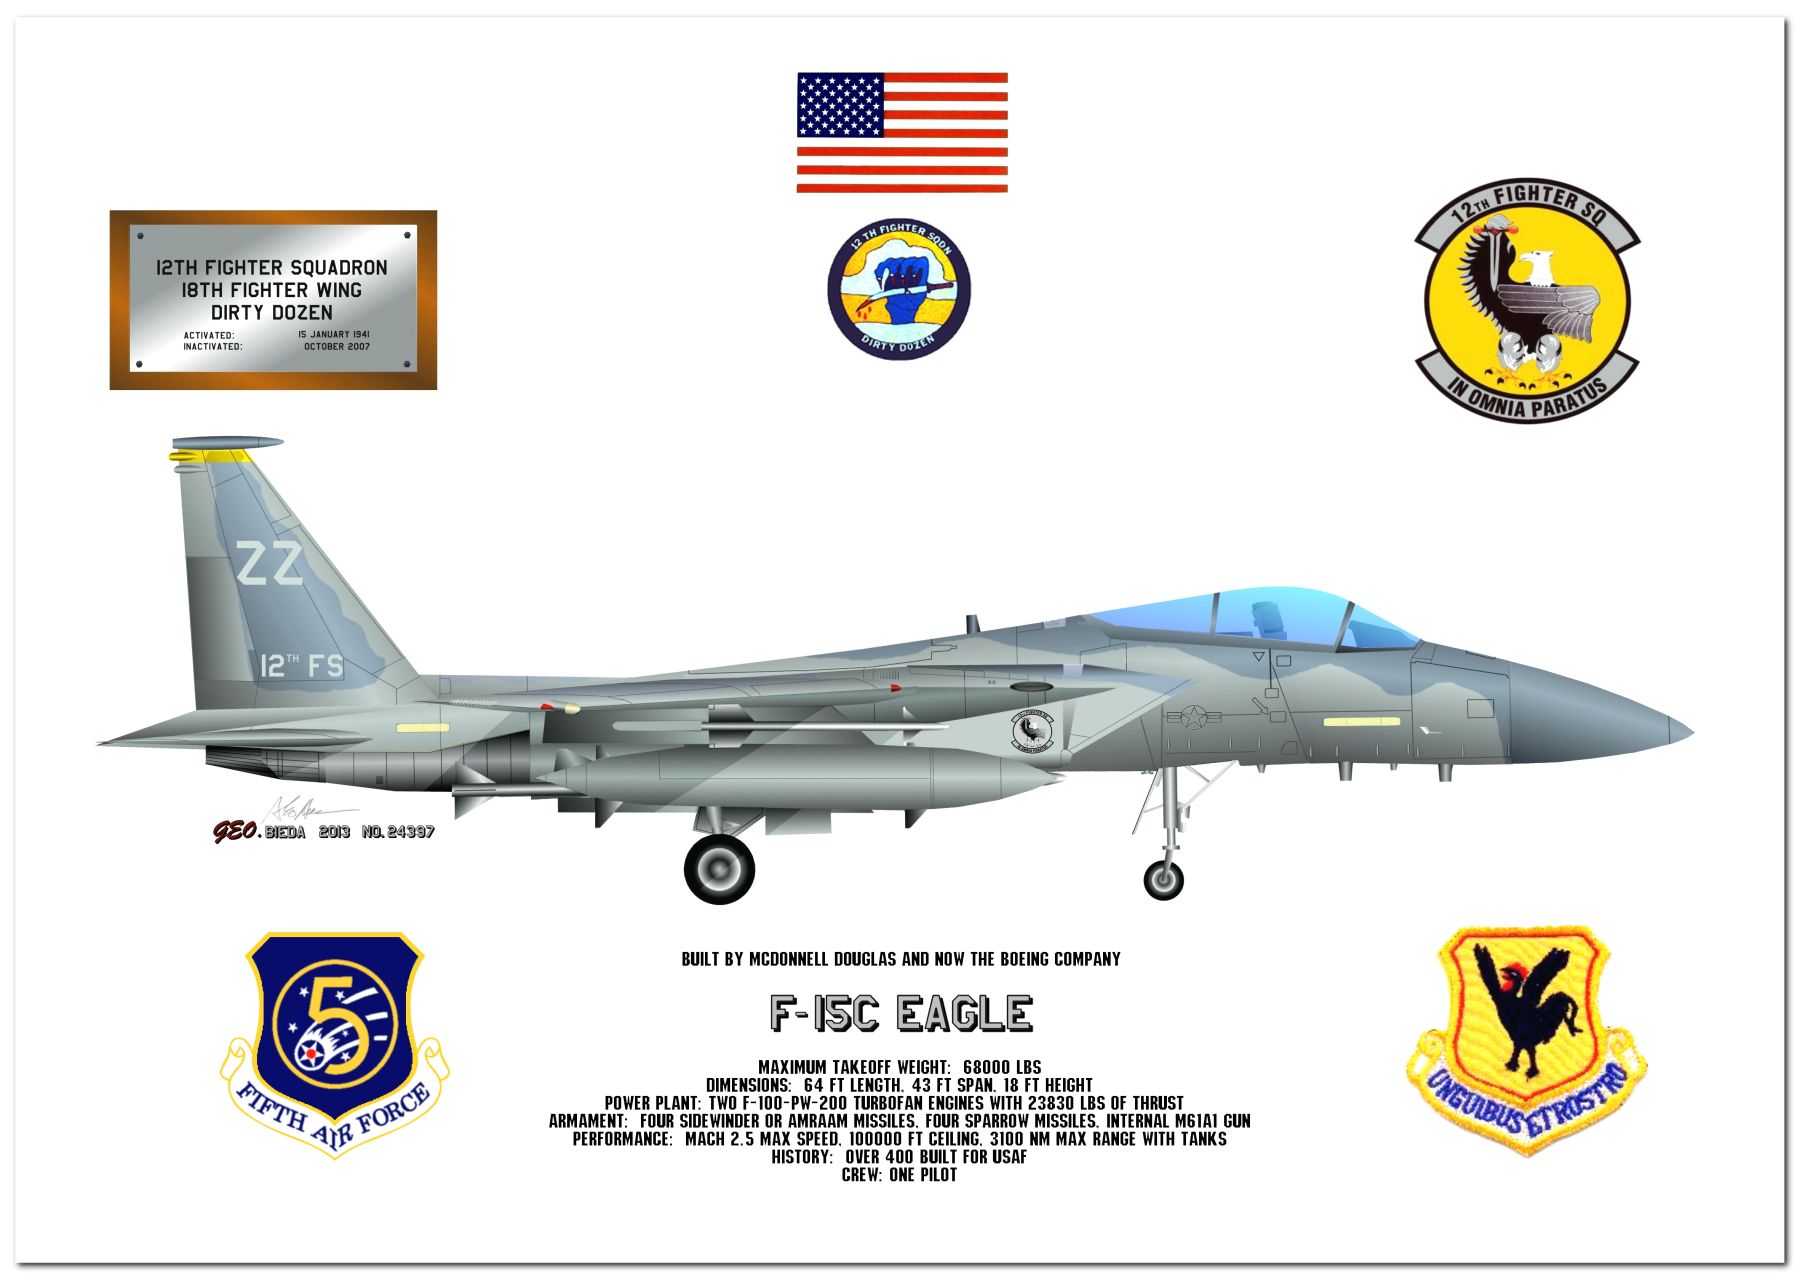 F-15 Eagle Profile Drawings by George Bieda